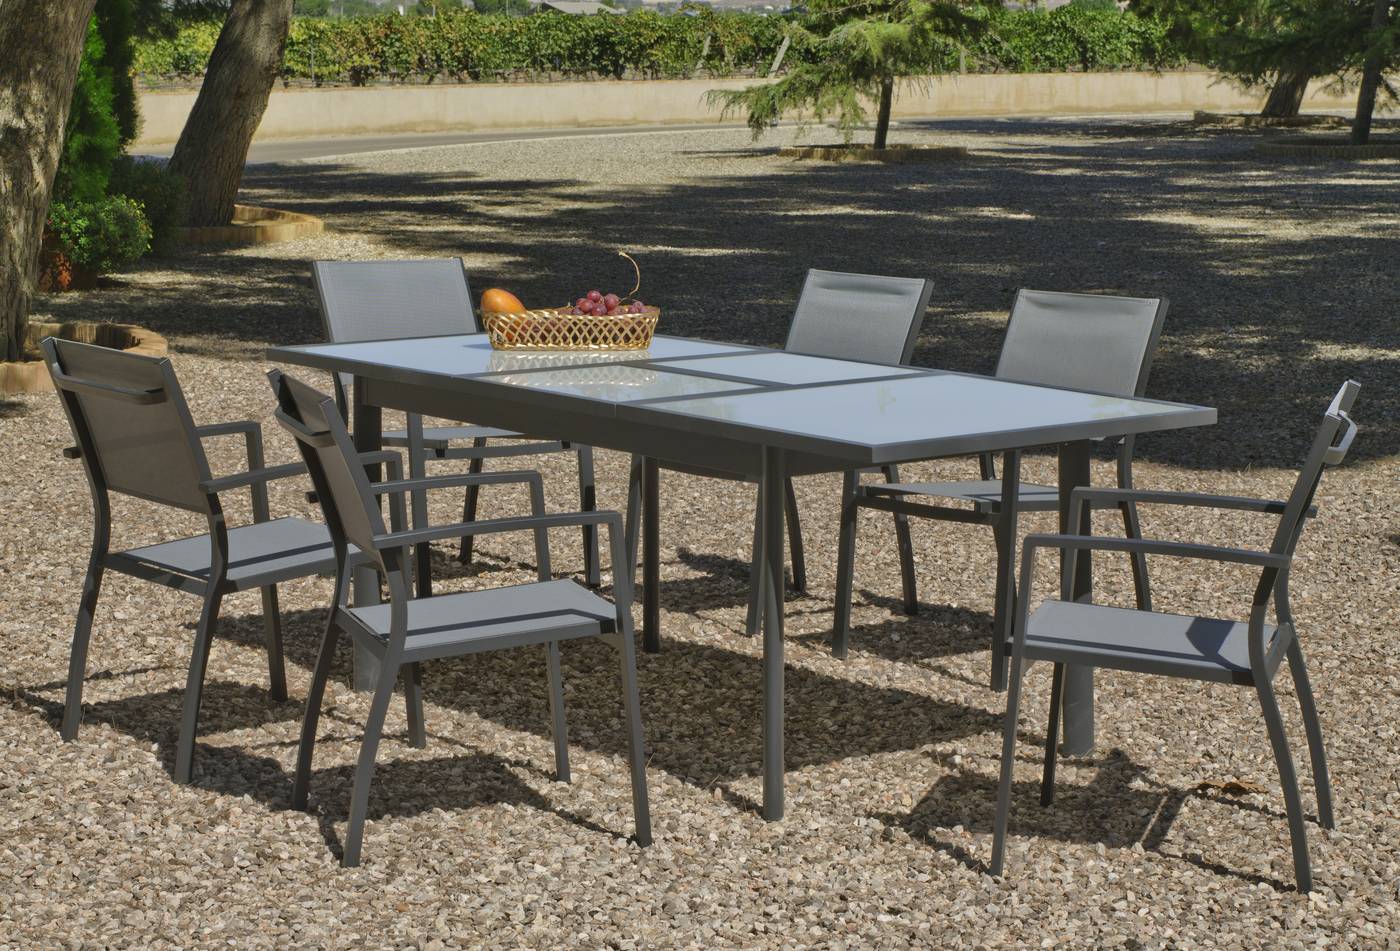 Conjunto de aluminio color antracita: mesa extensible 150-200 cm. + 6 sillones apilables de alumino y textilen